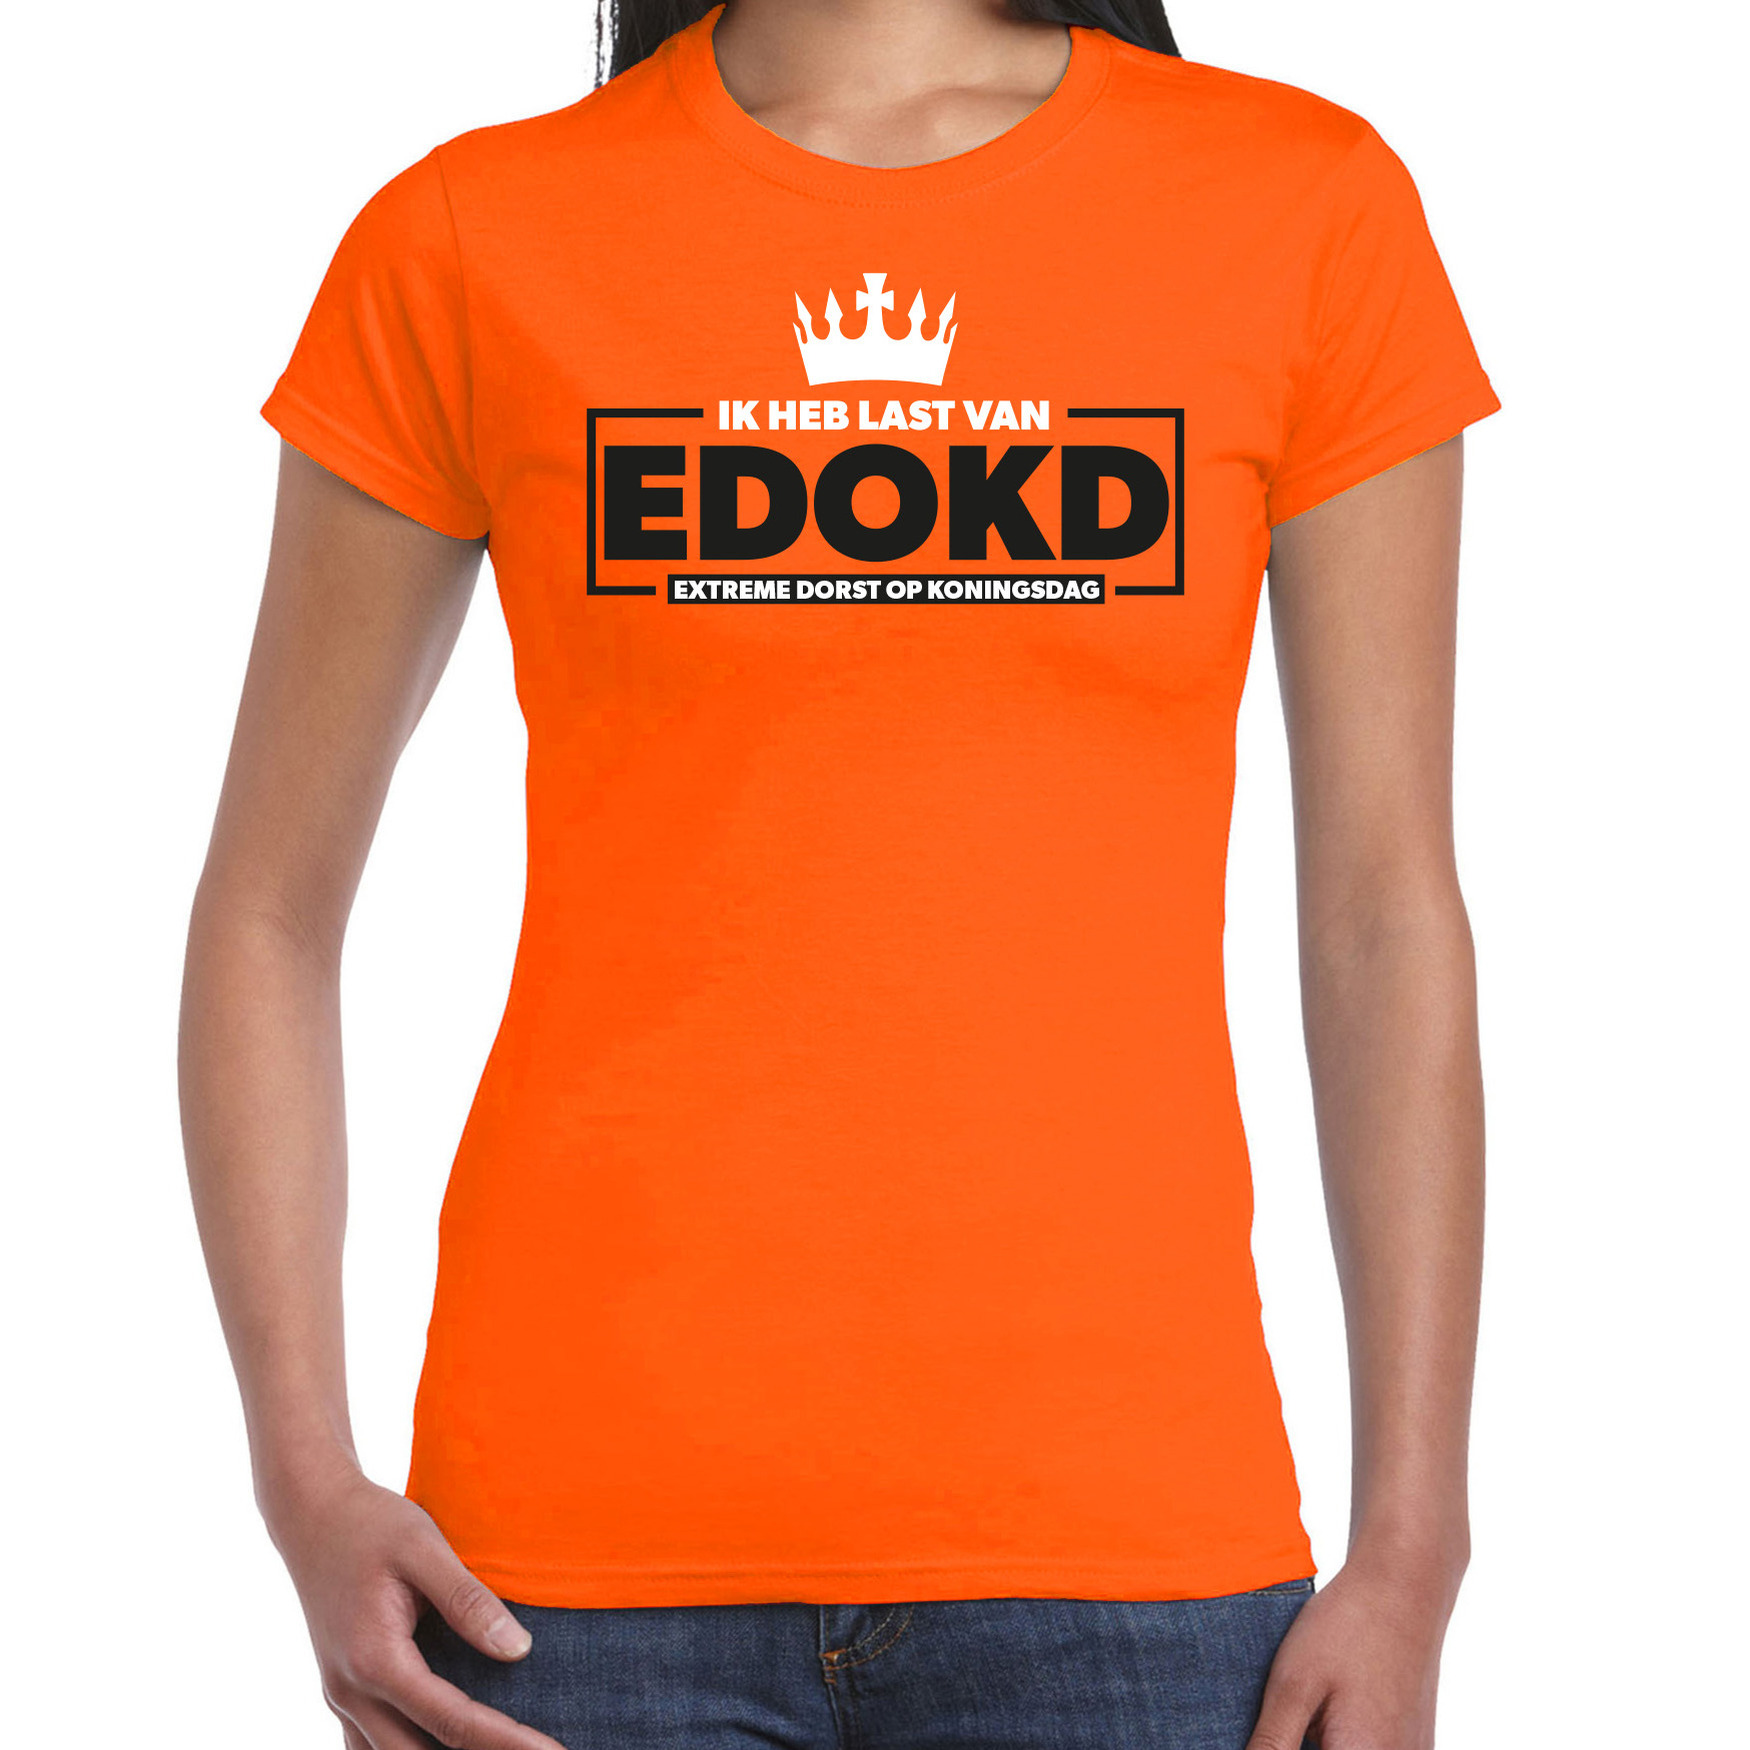 Koningsdag verkleed T-shirt voor dames extreme dorst op koningsdag oranje feestkleding